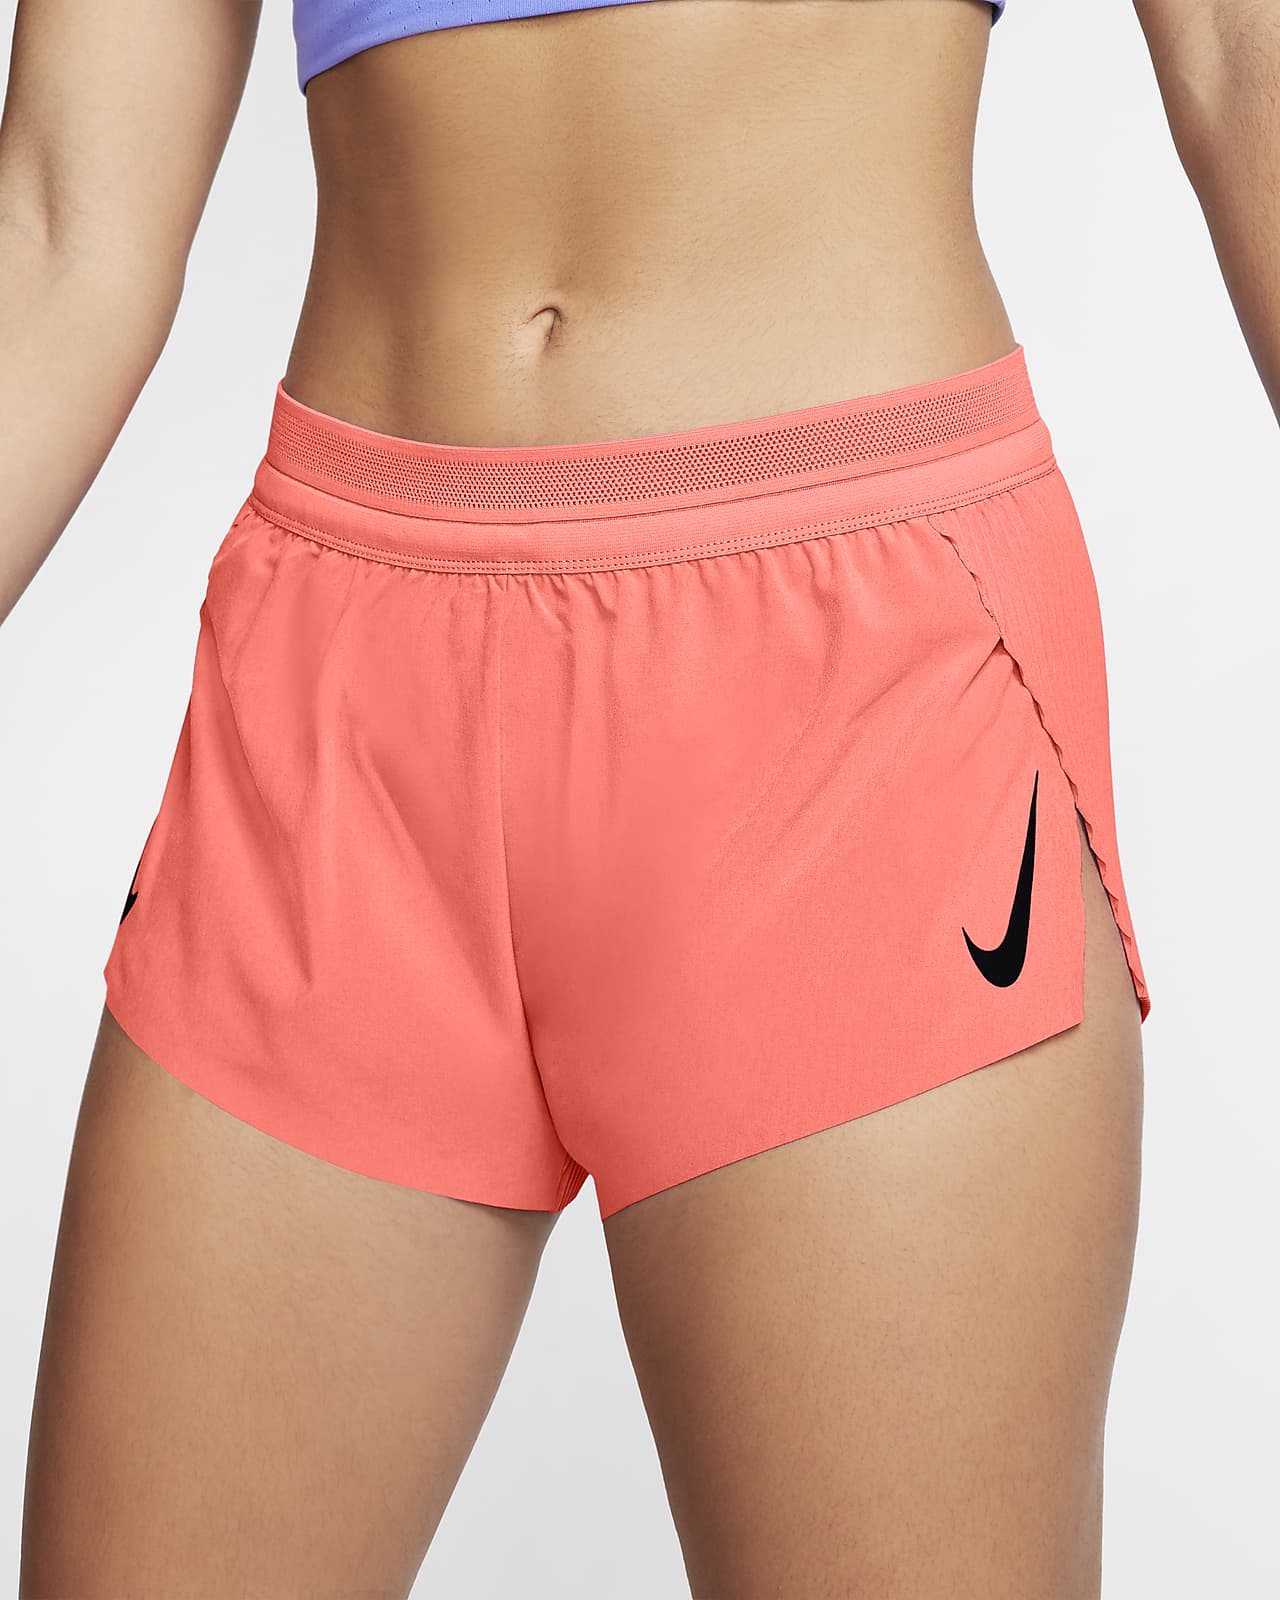 Running Shorts. Nike ID